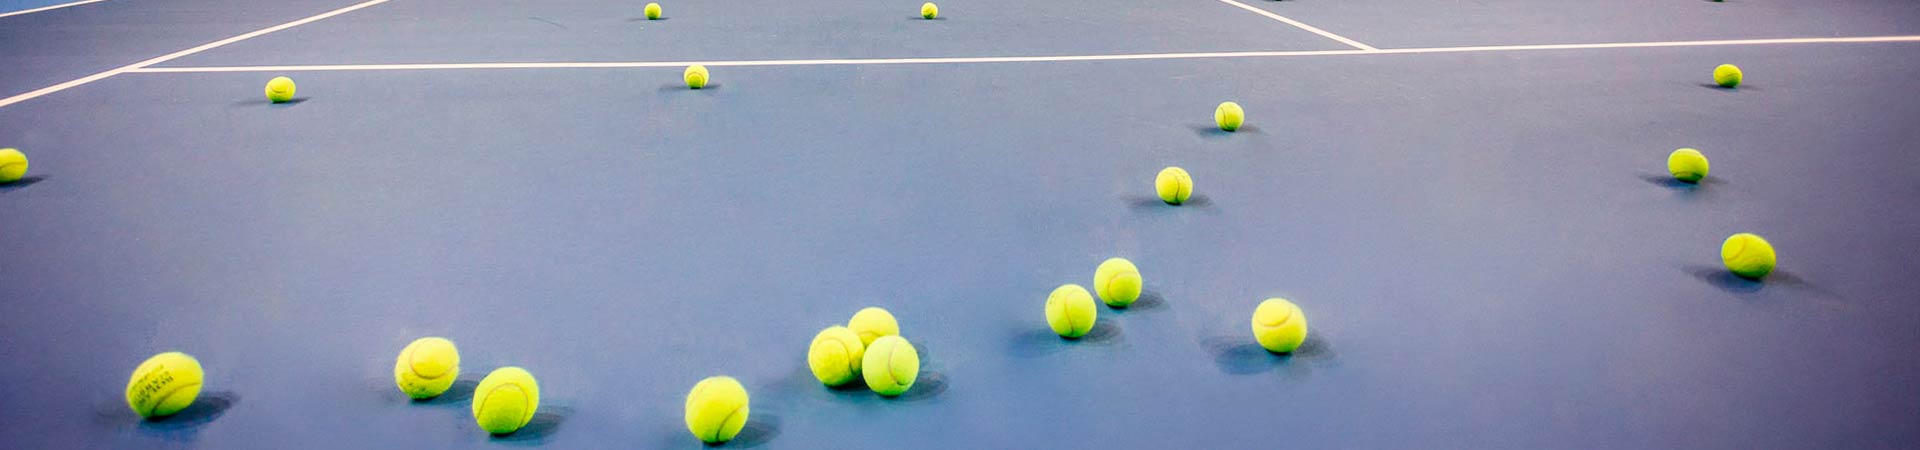 Обучение игре в большой теннис в Москве фото